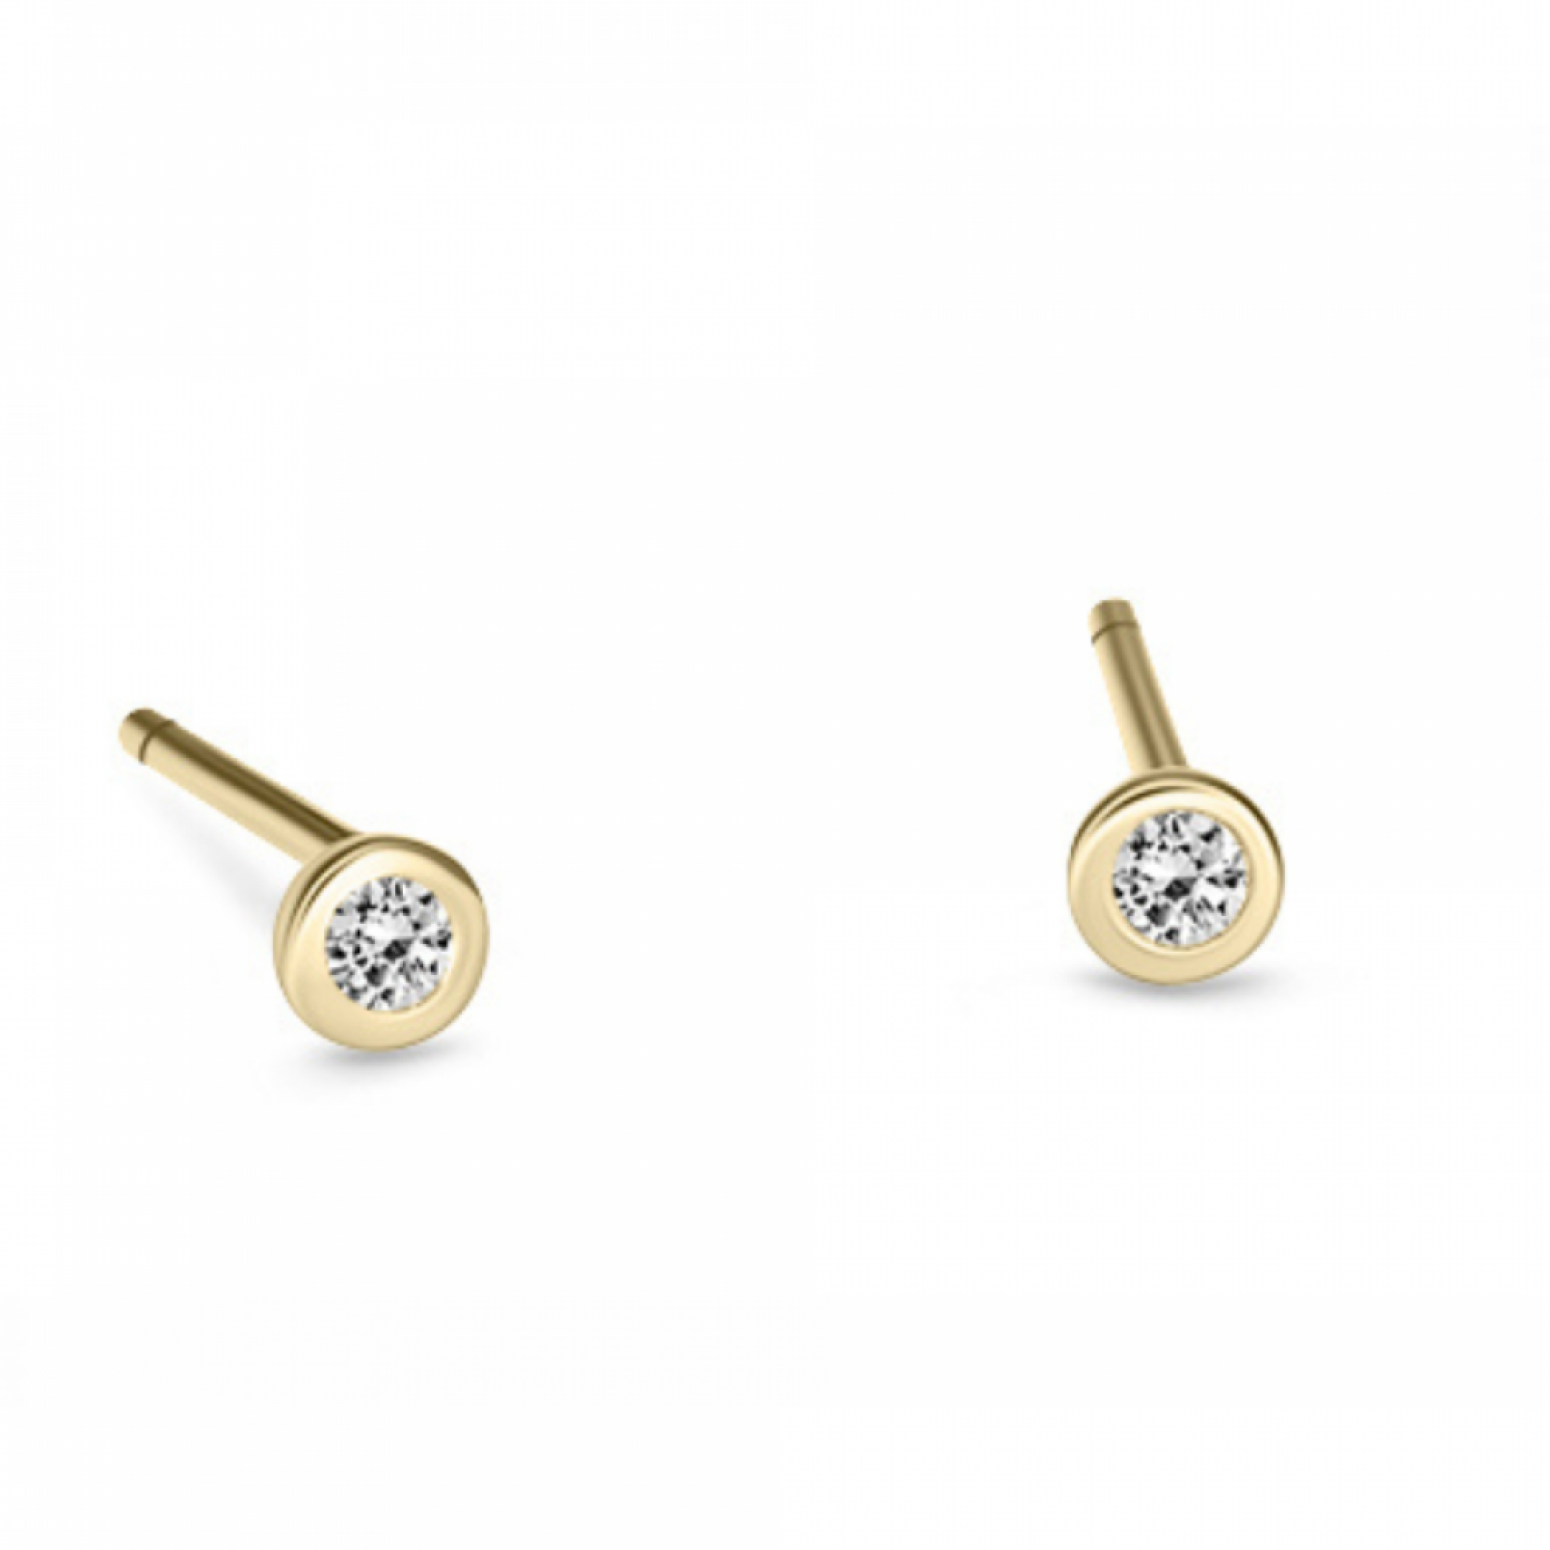 Solitaire earrings 14K gold with diamonds 0.04ct, VS1, G sk3381 EARRINGS Κοσμηματα - chrilia.gr